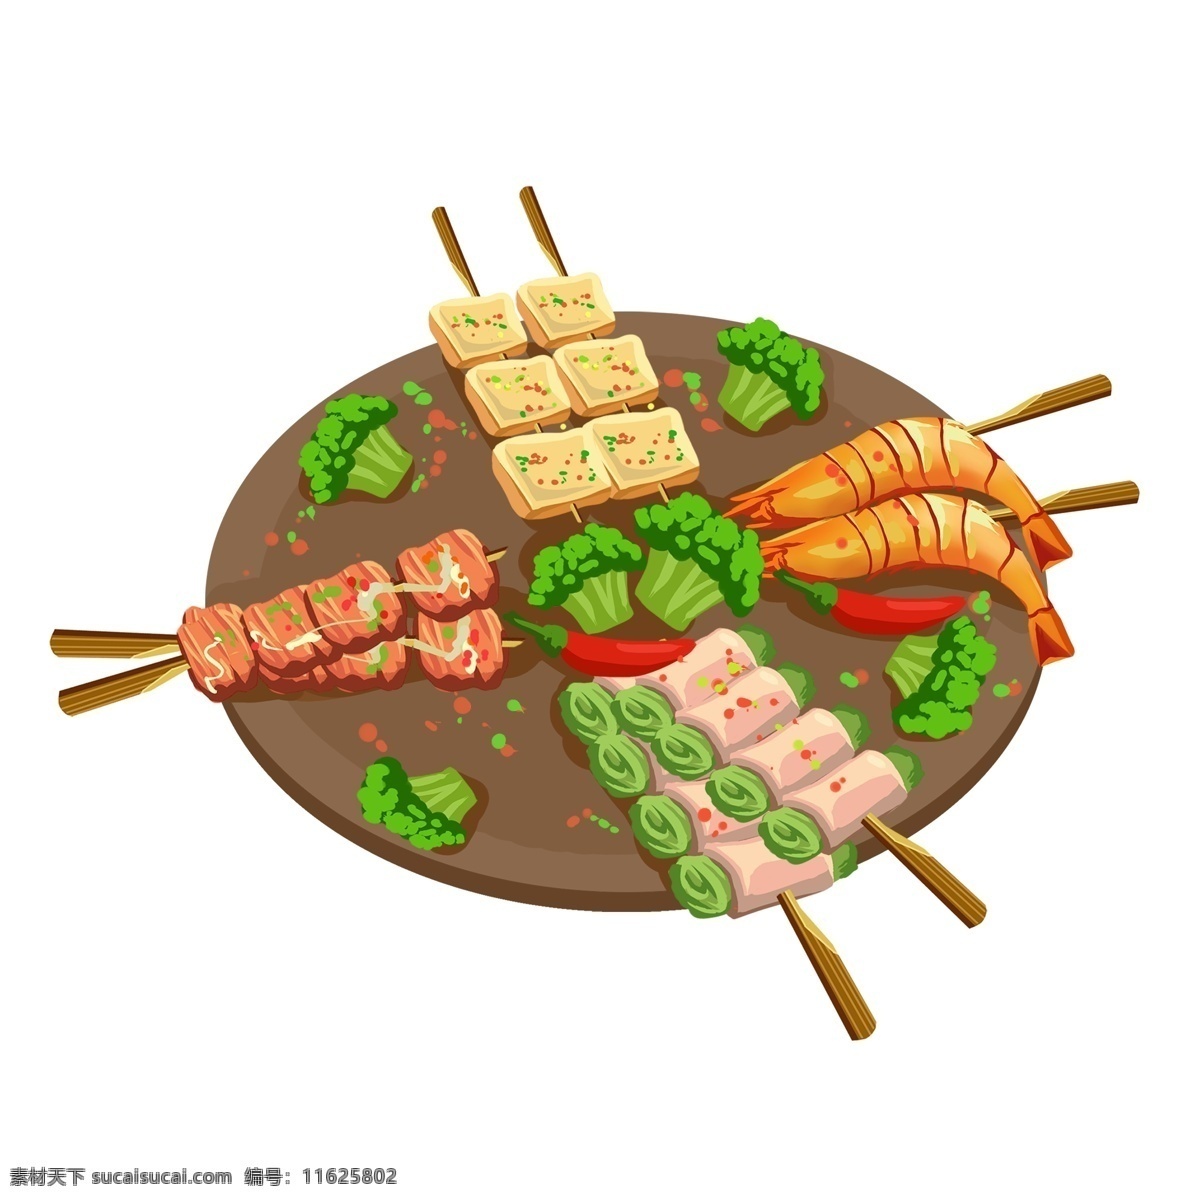 烧烤 肉 基围虾 干 子 美食 撸 串 手绘 食物 小吃 烤肉 烤串 撸串 烤豆腐 西兰花